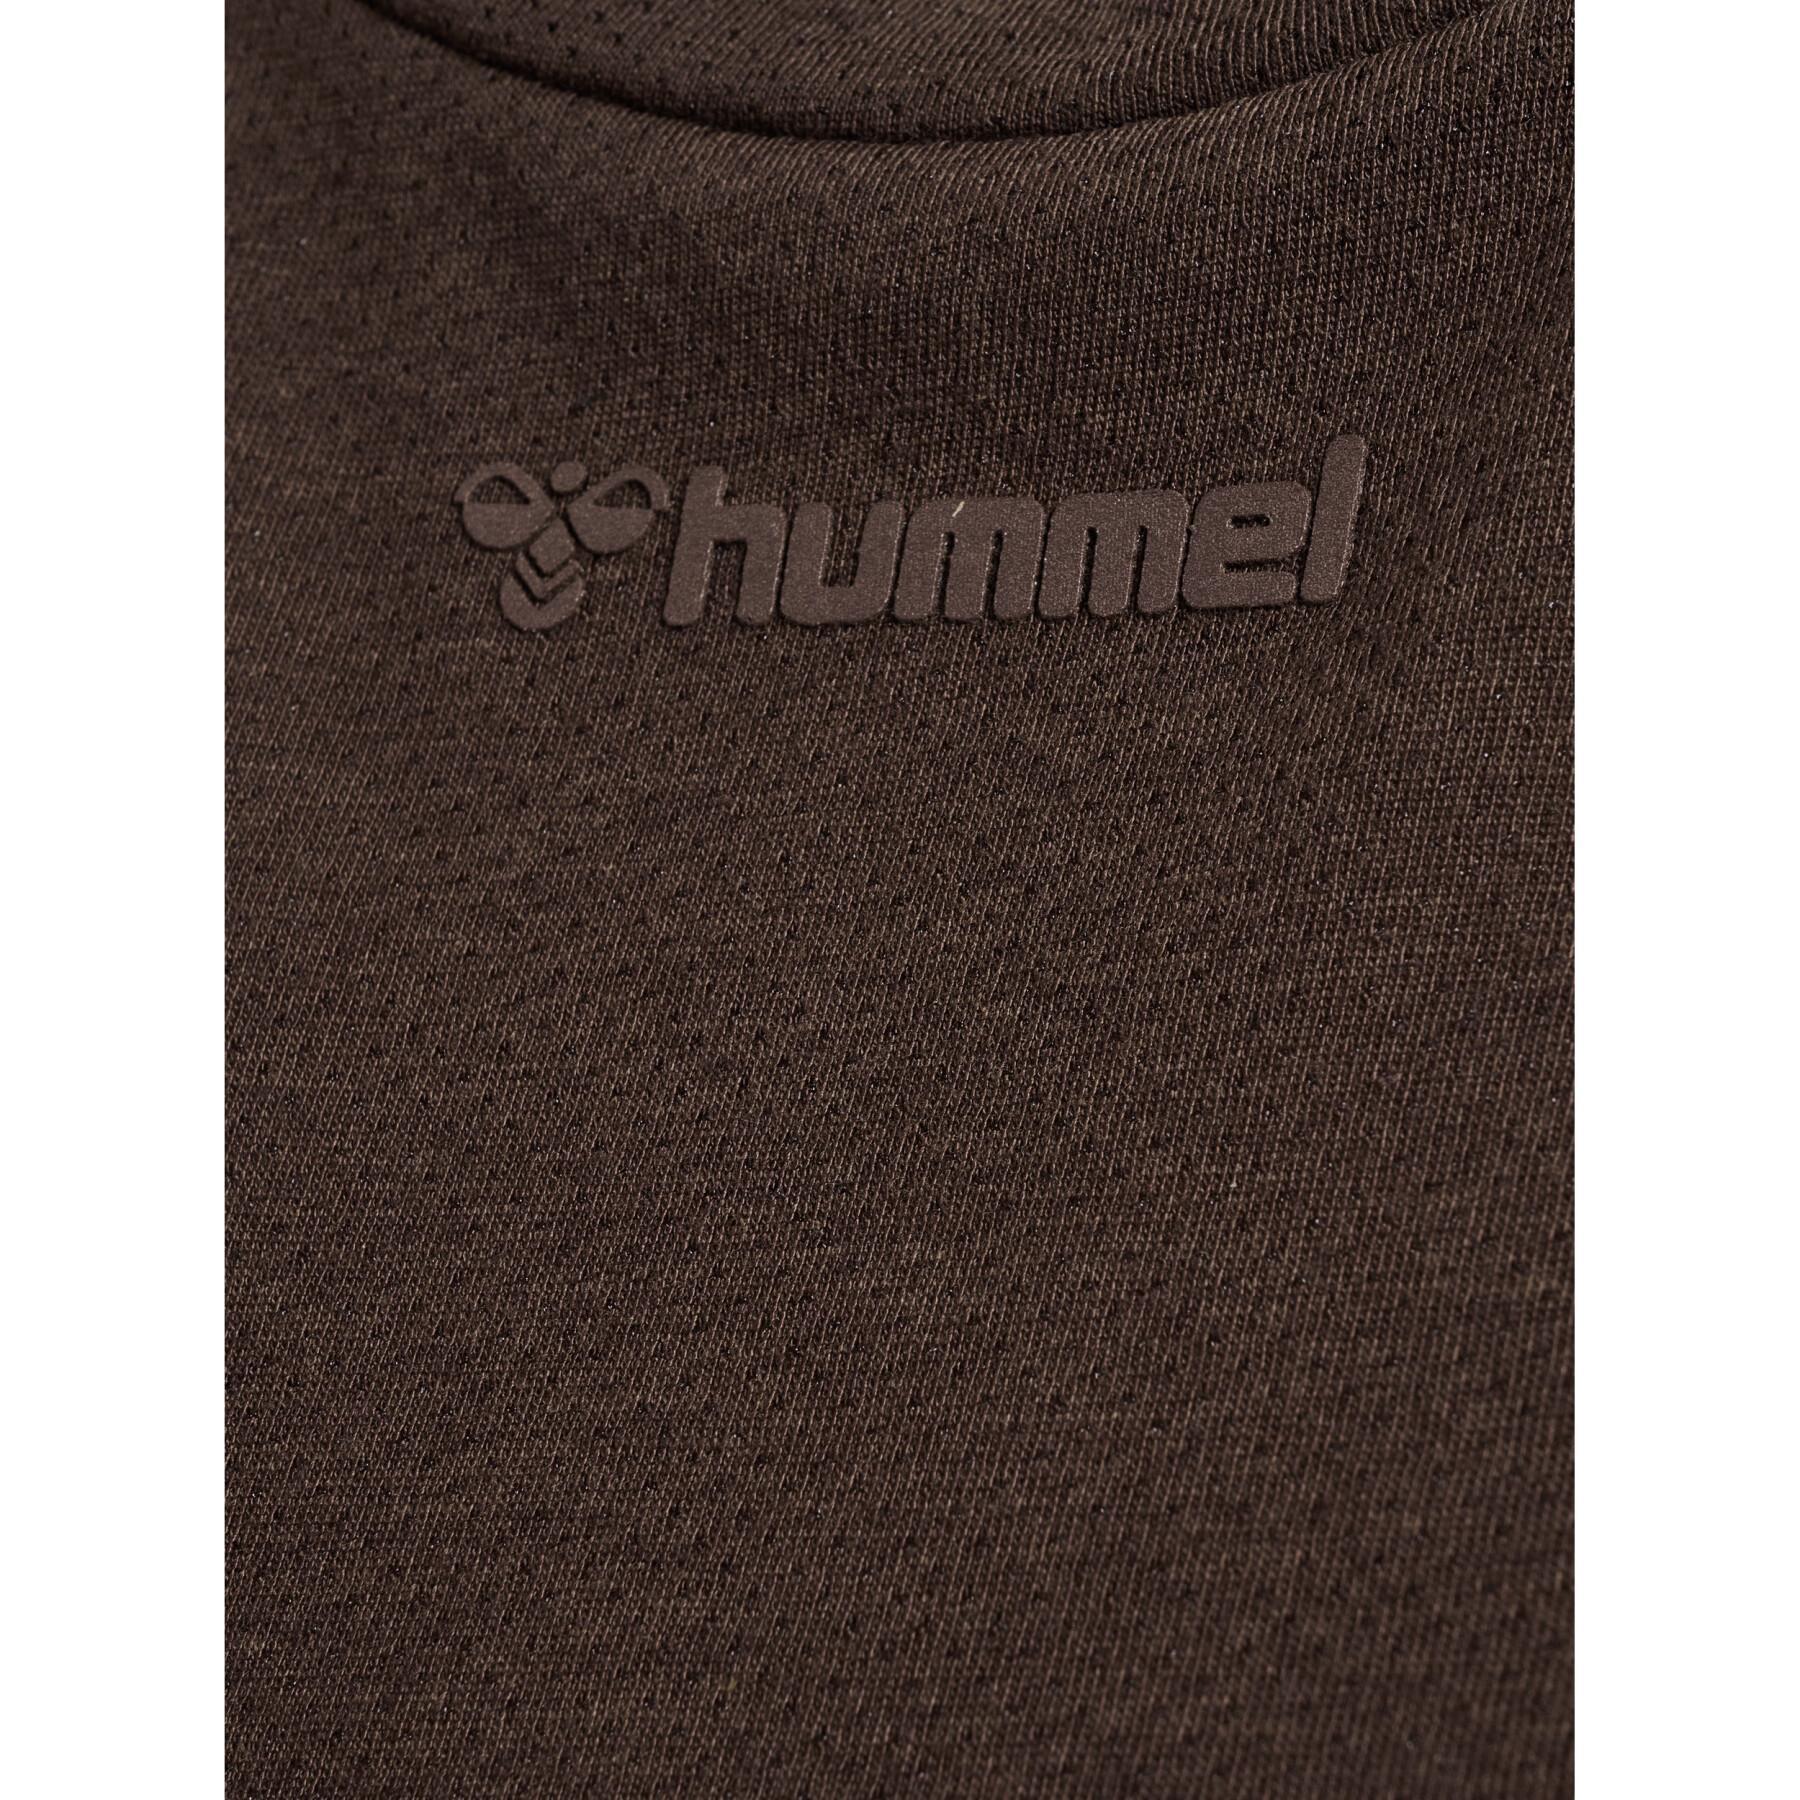 Camiseta de manga larga para mujer Hummel Mt Vanja